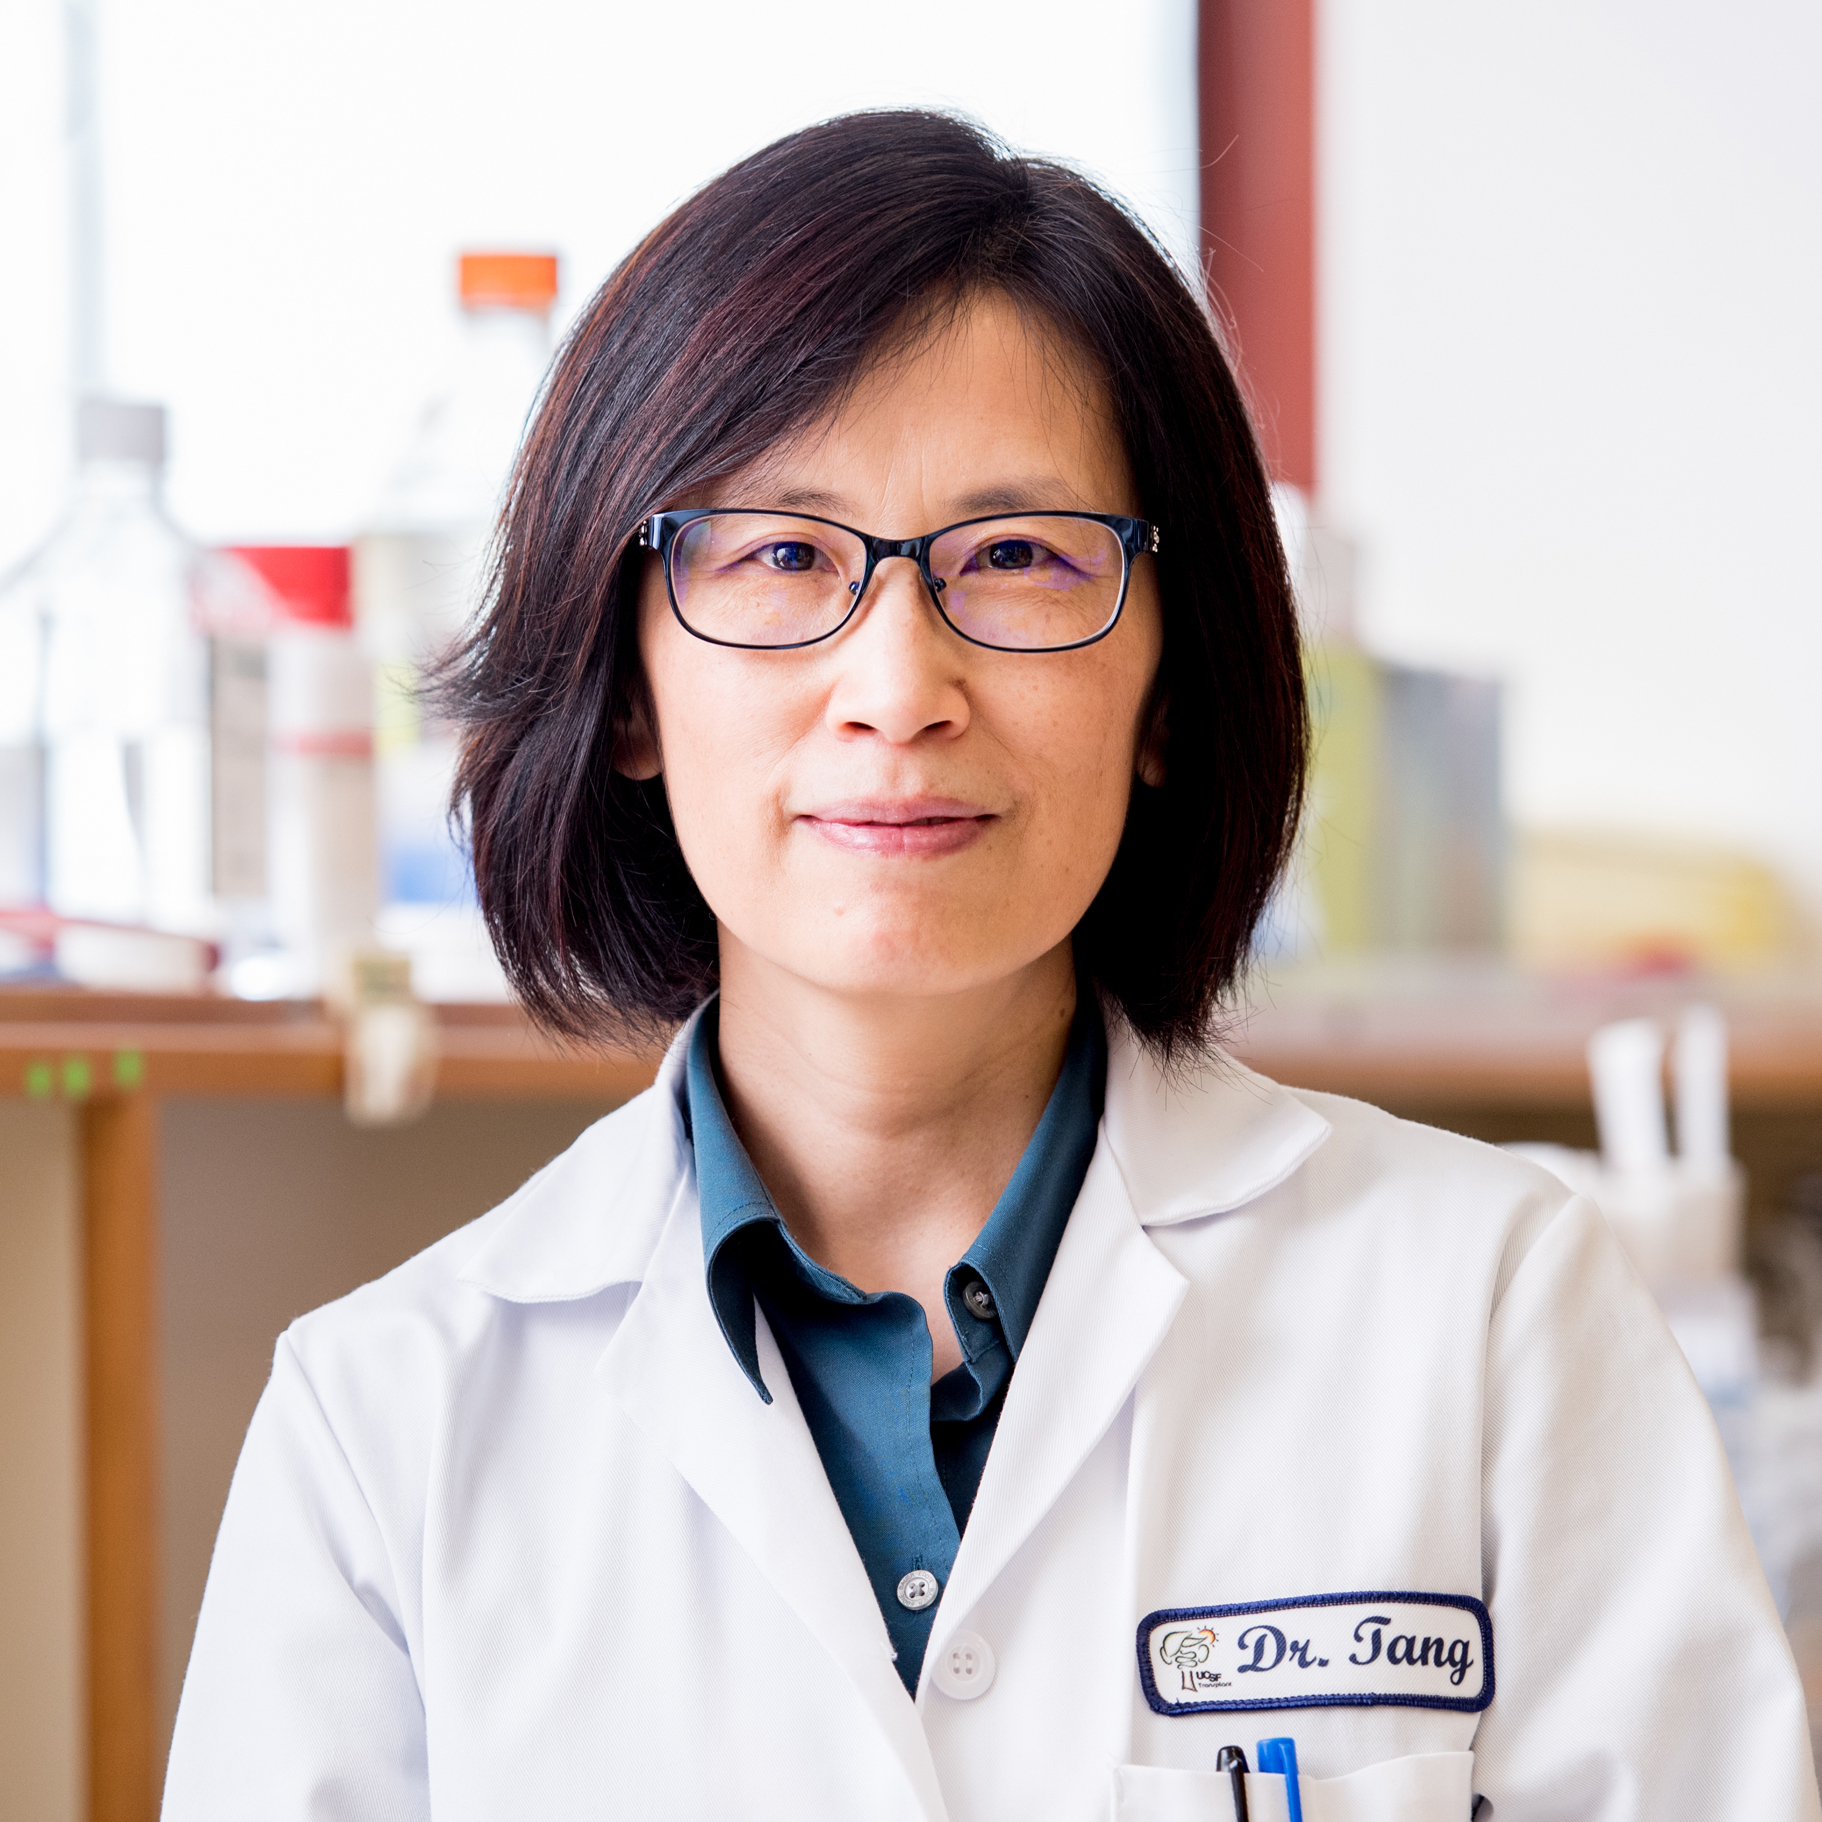 Qizhi Tang, Ph.D., UCSF